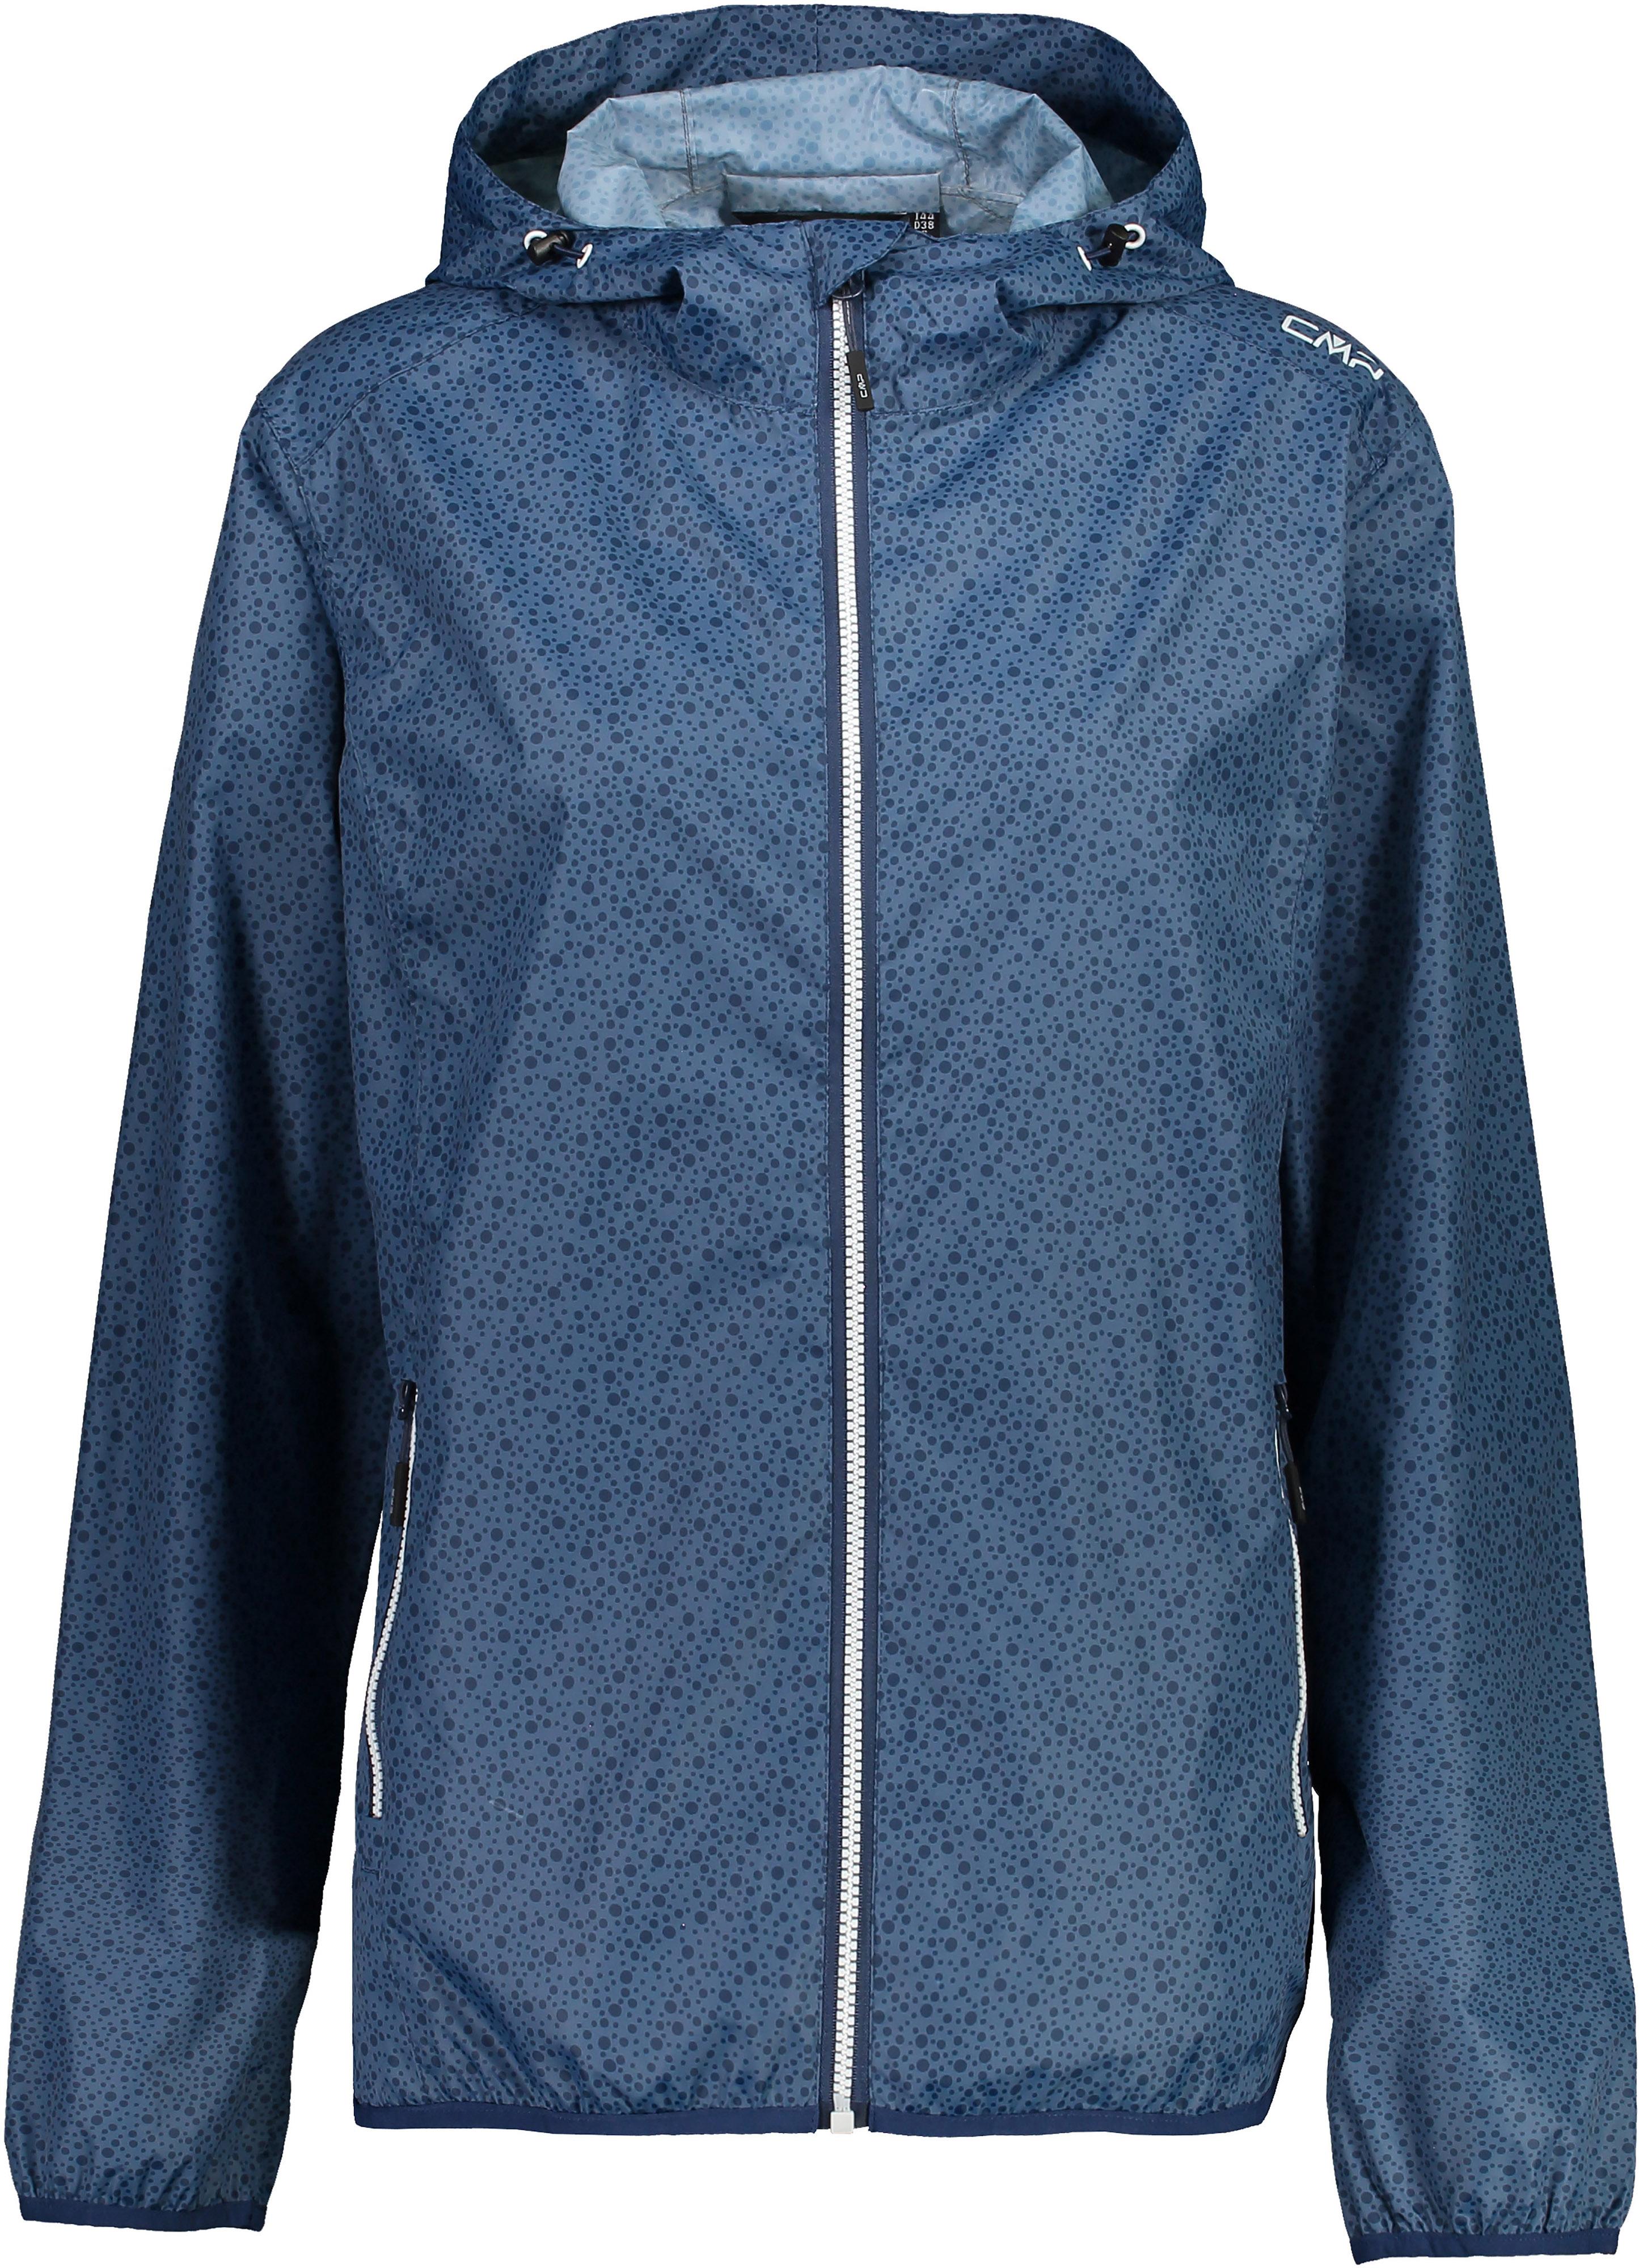 CMP Regenjacke Damen blue im Online Shop von SportScheck kaufen